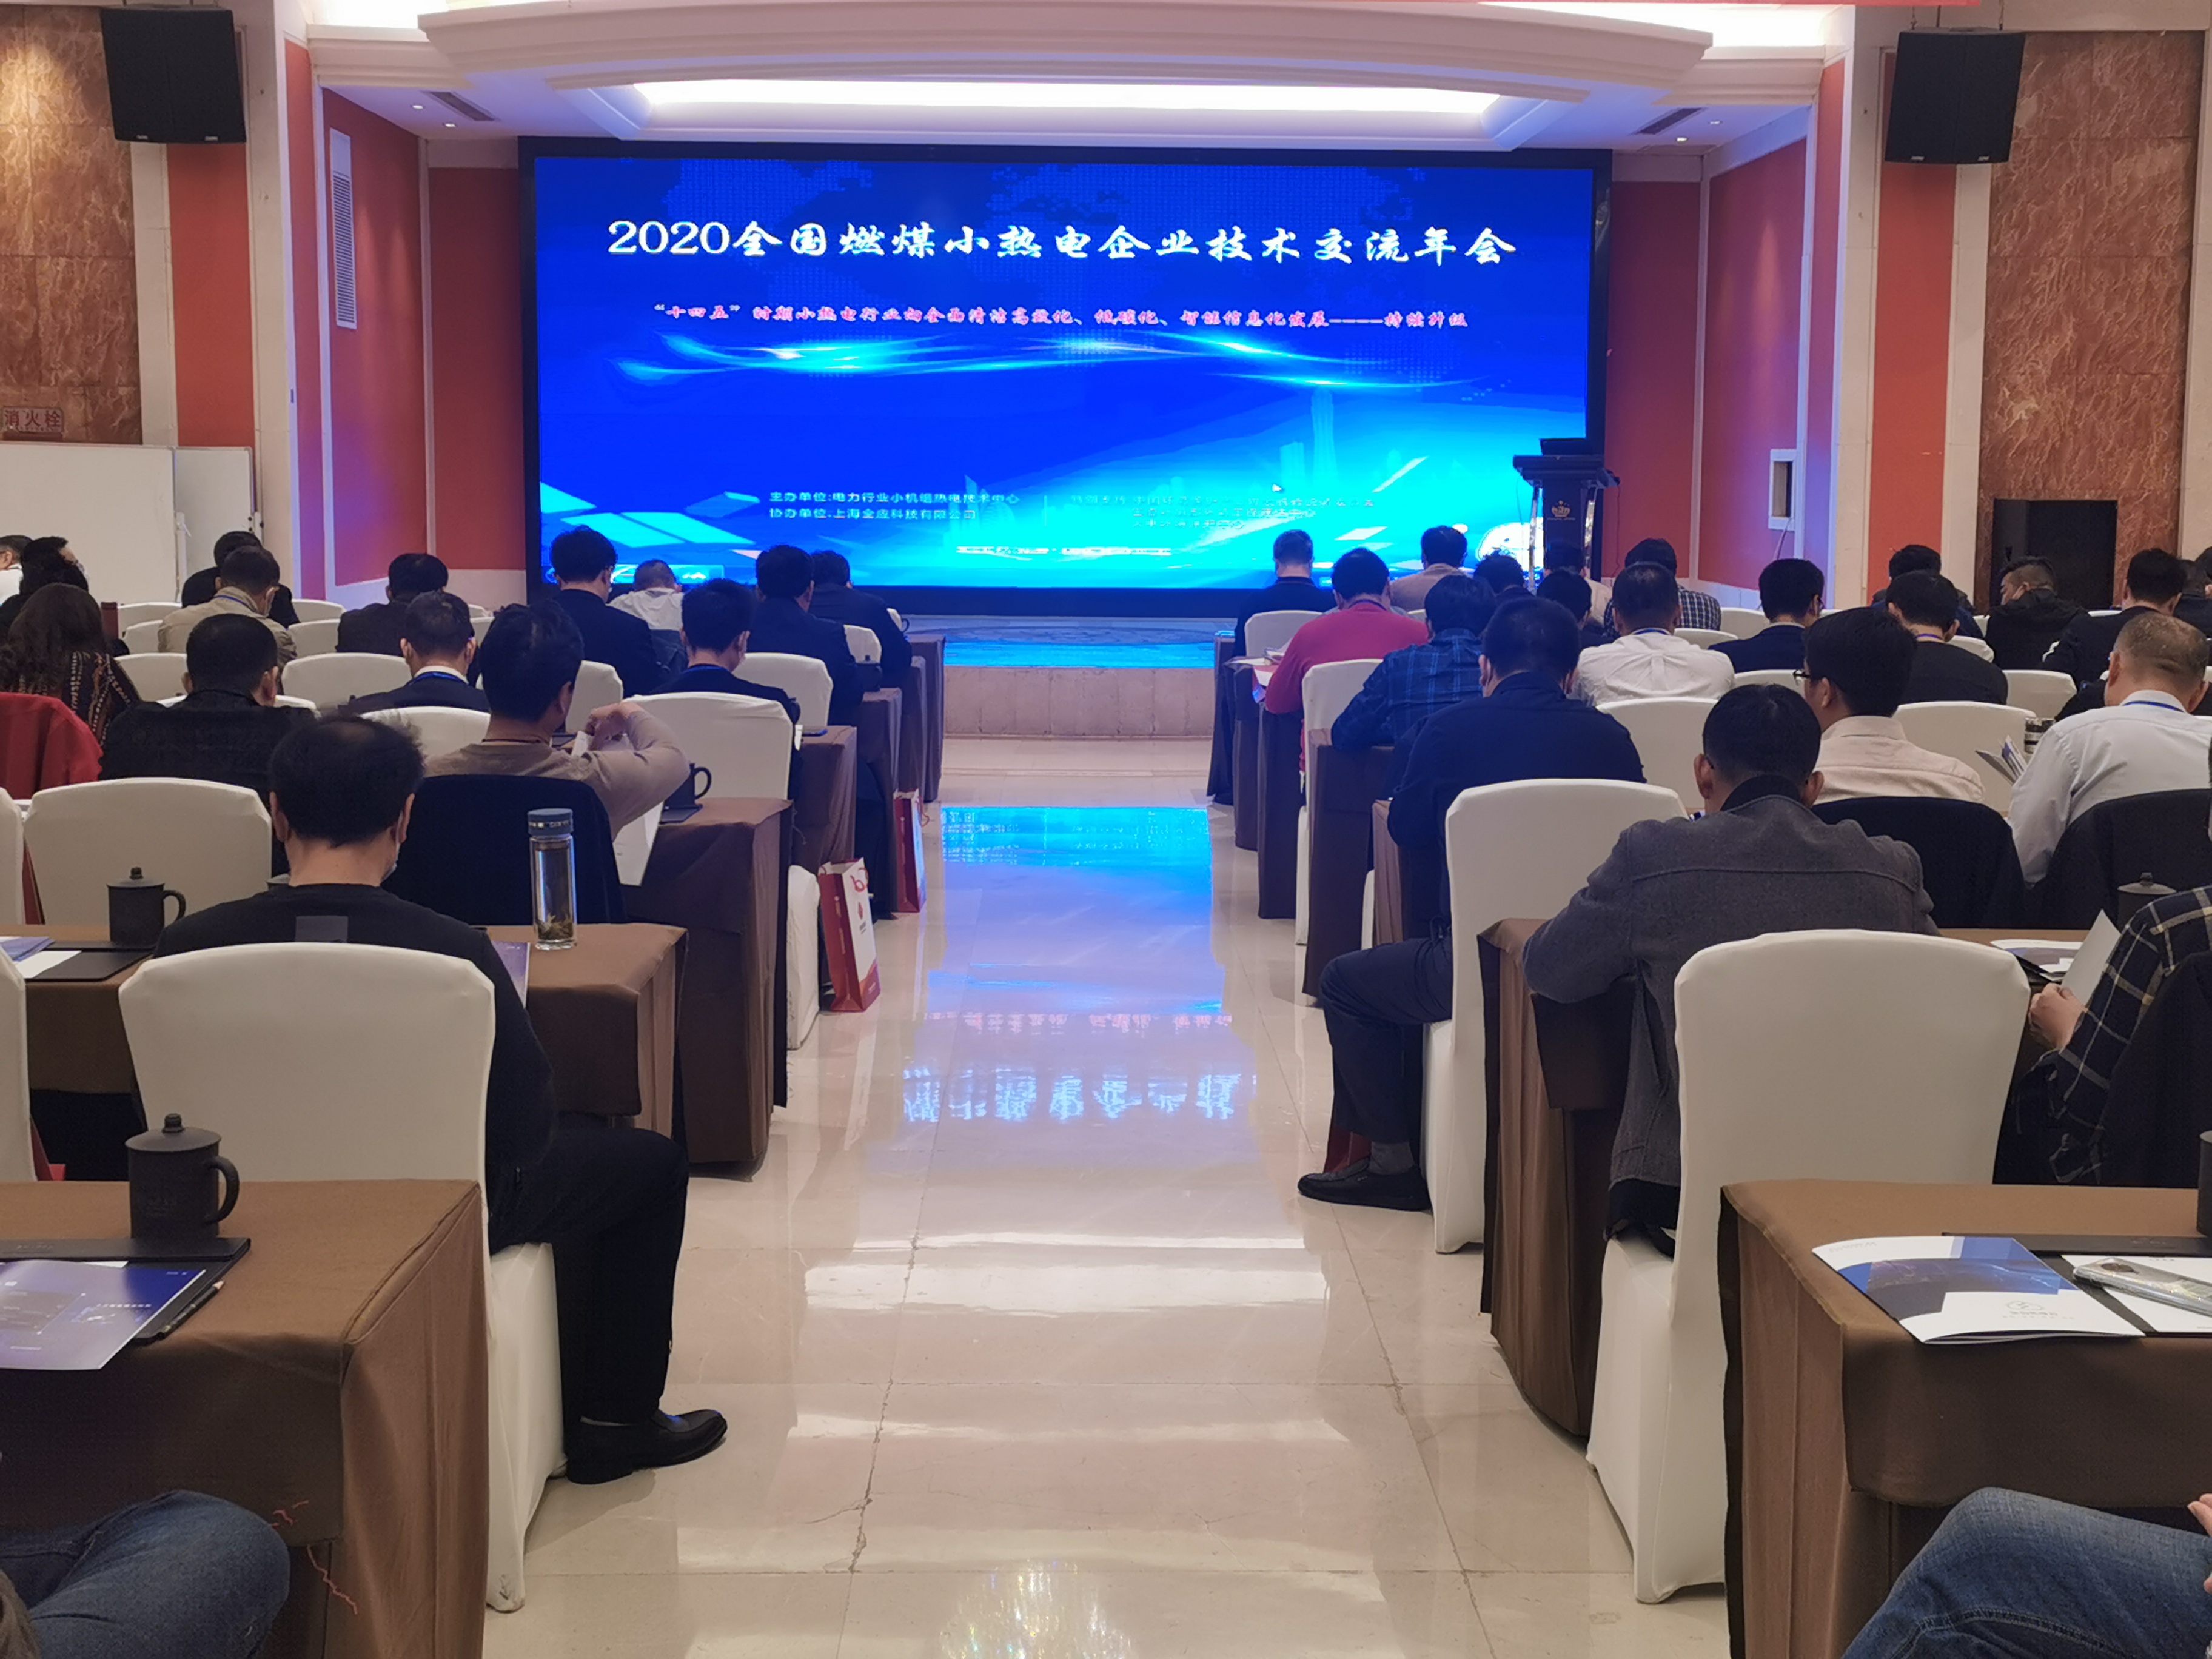 上海炳晟機電科技有限公司應邀參加2020全國燃煤小熱電企業技術交流年會